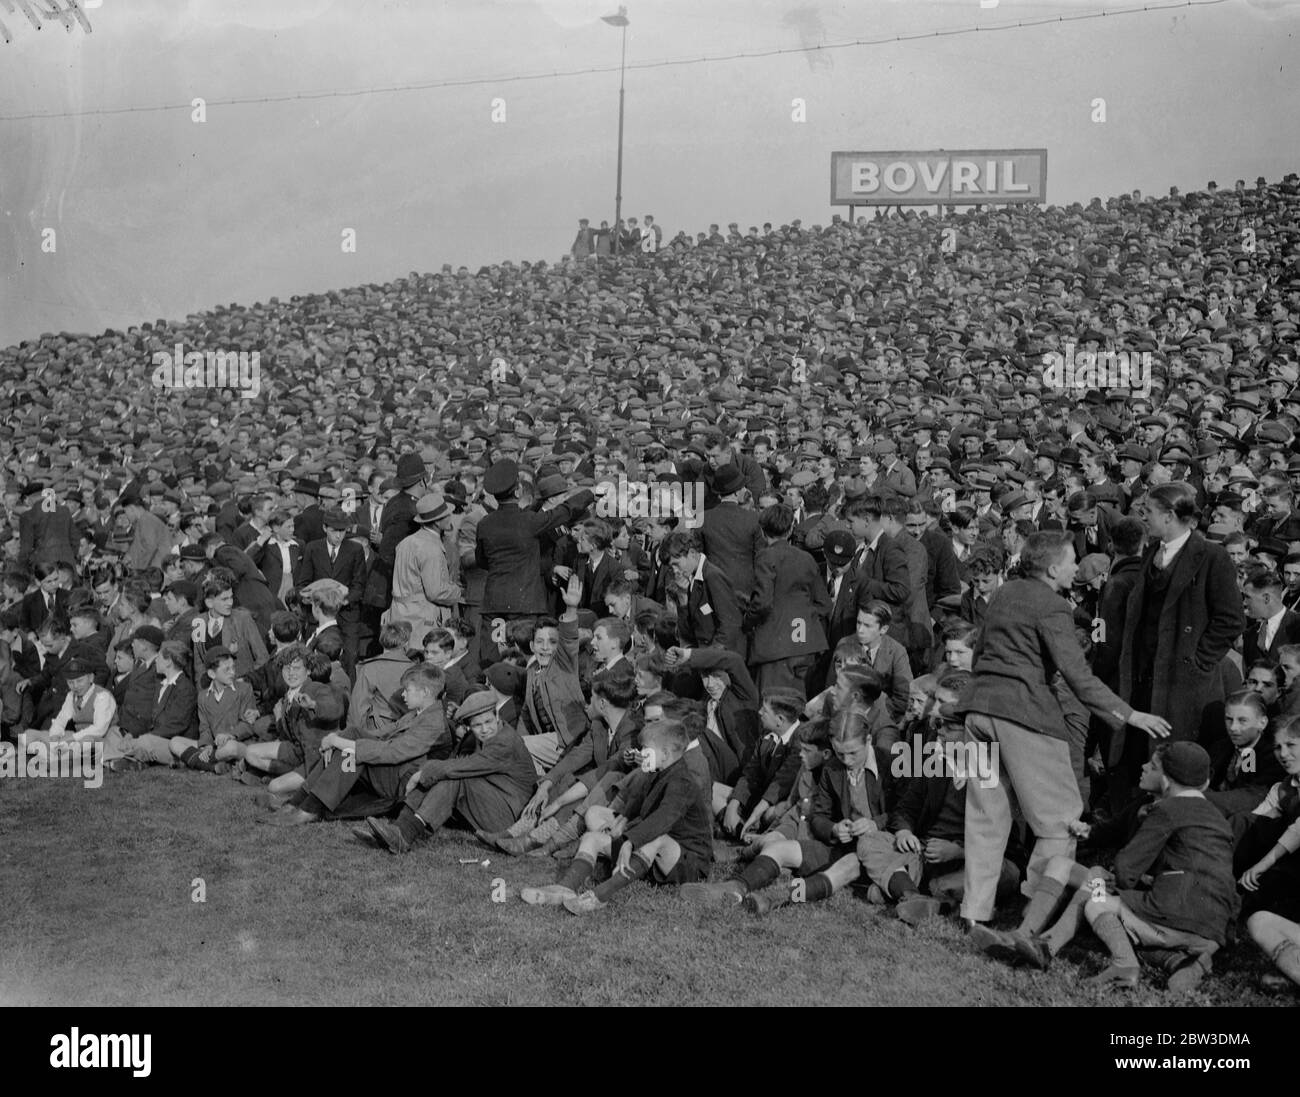 Die Menge bricht durch Barrieren in Chelsea - Arsenal Derby . Eine riesige Menge von 70,000 Menschen beobachtete das London Football Derby zwischen Chelsea und Arsenal an der Stamford Bridge. 12. Oktober 1935 Stockfoto